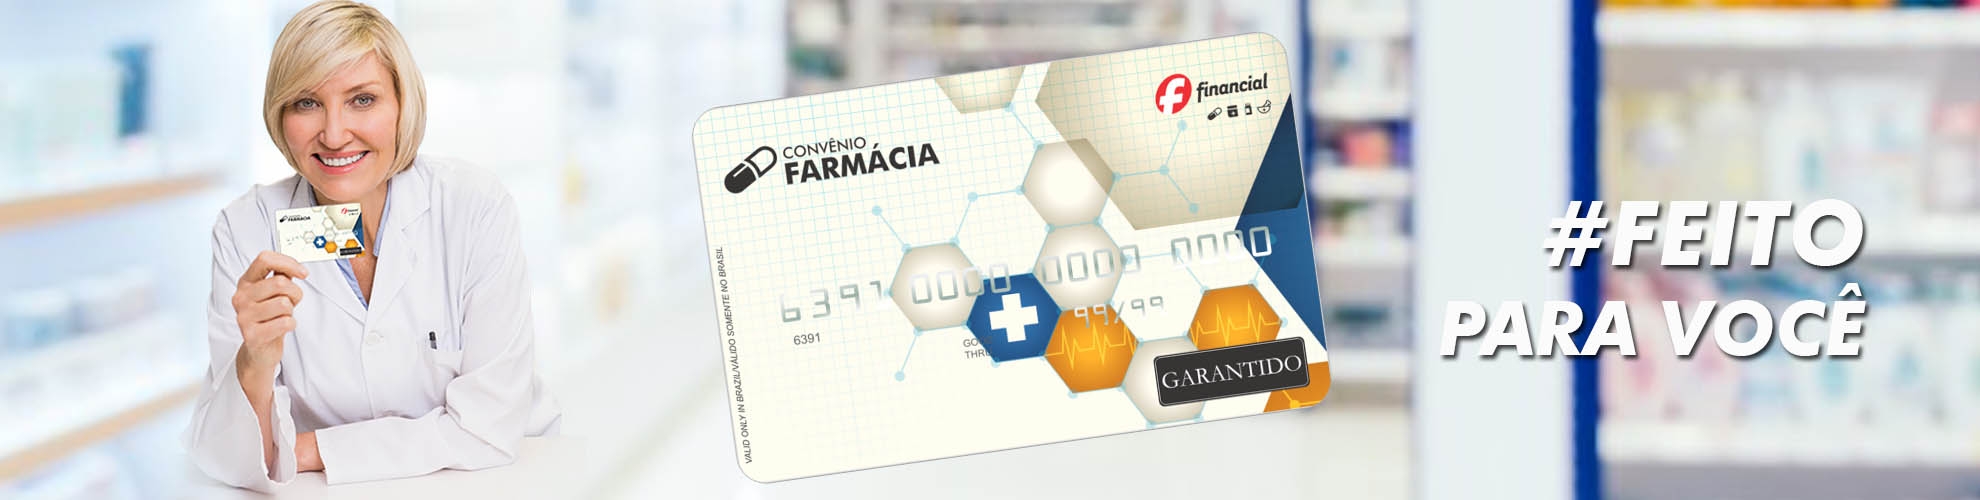 Cartão Farmácia - Crédito